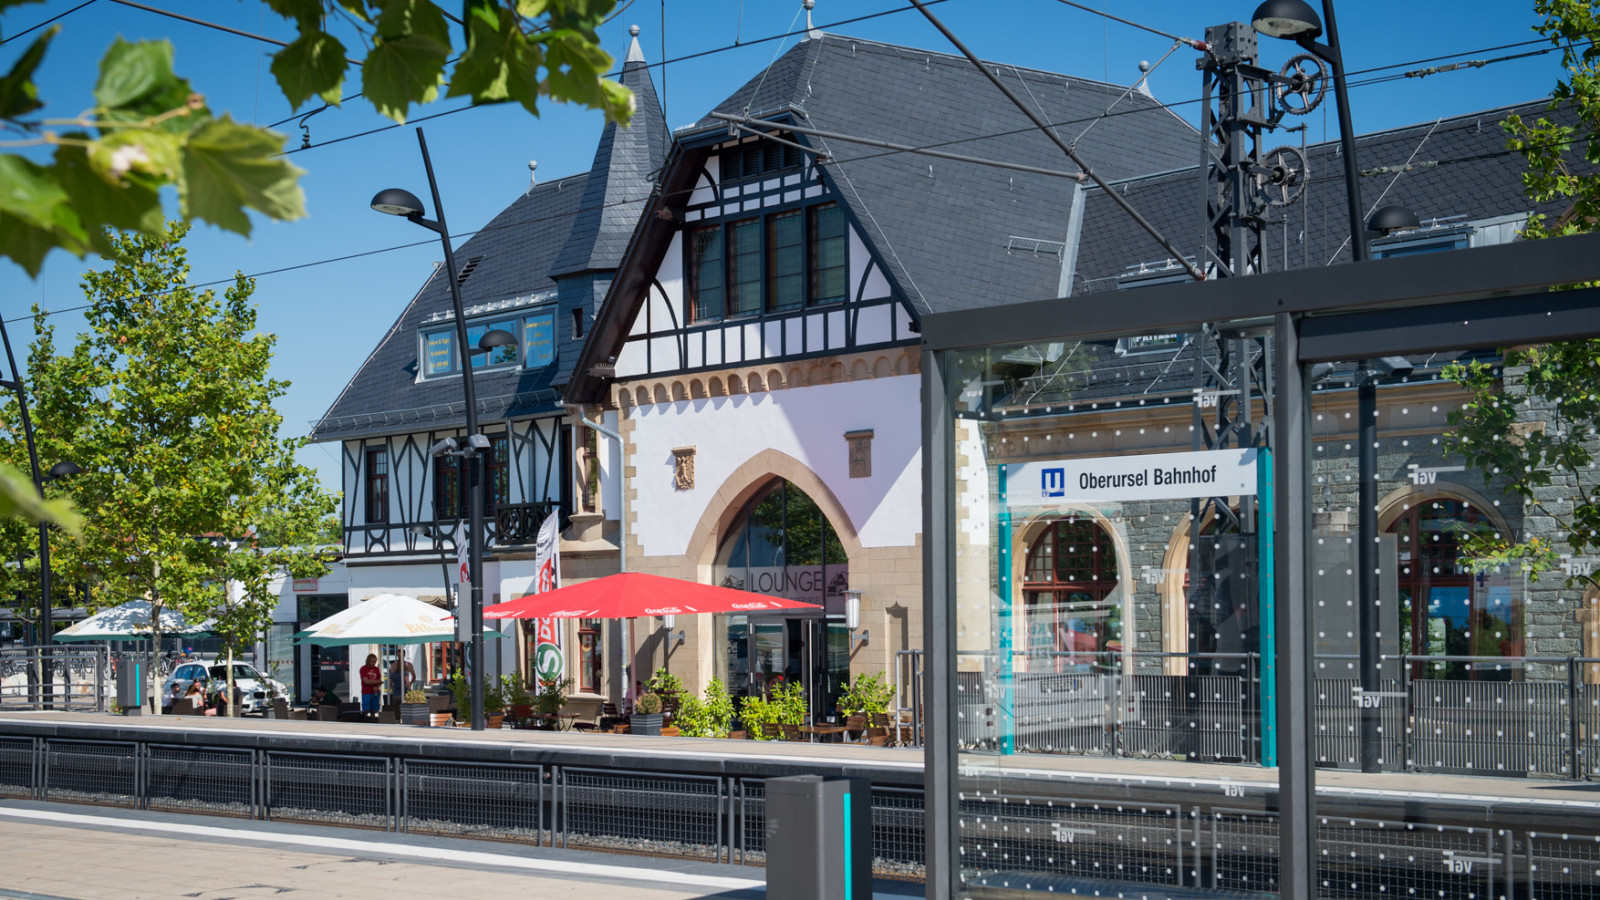 Bahnhof des Jahres, Oberursel